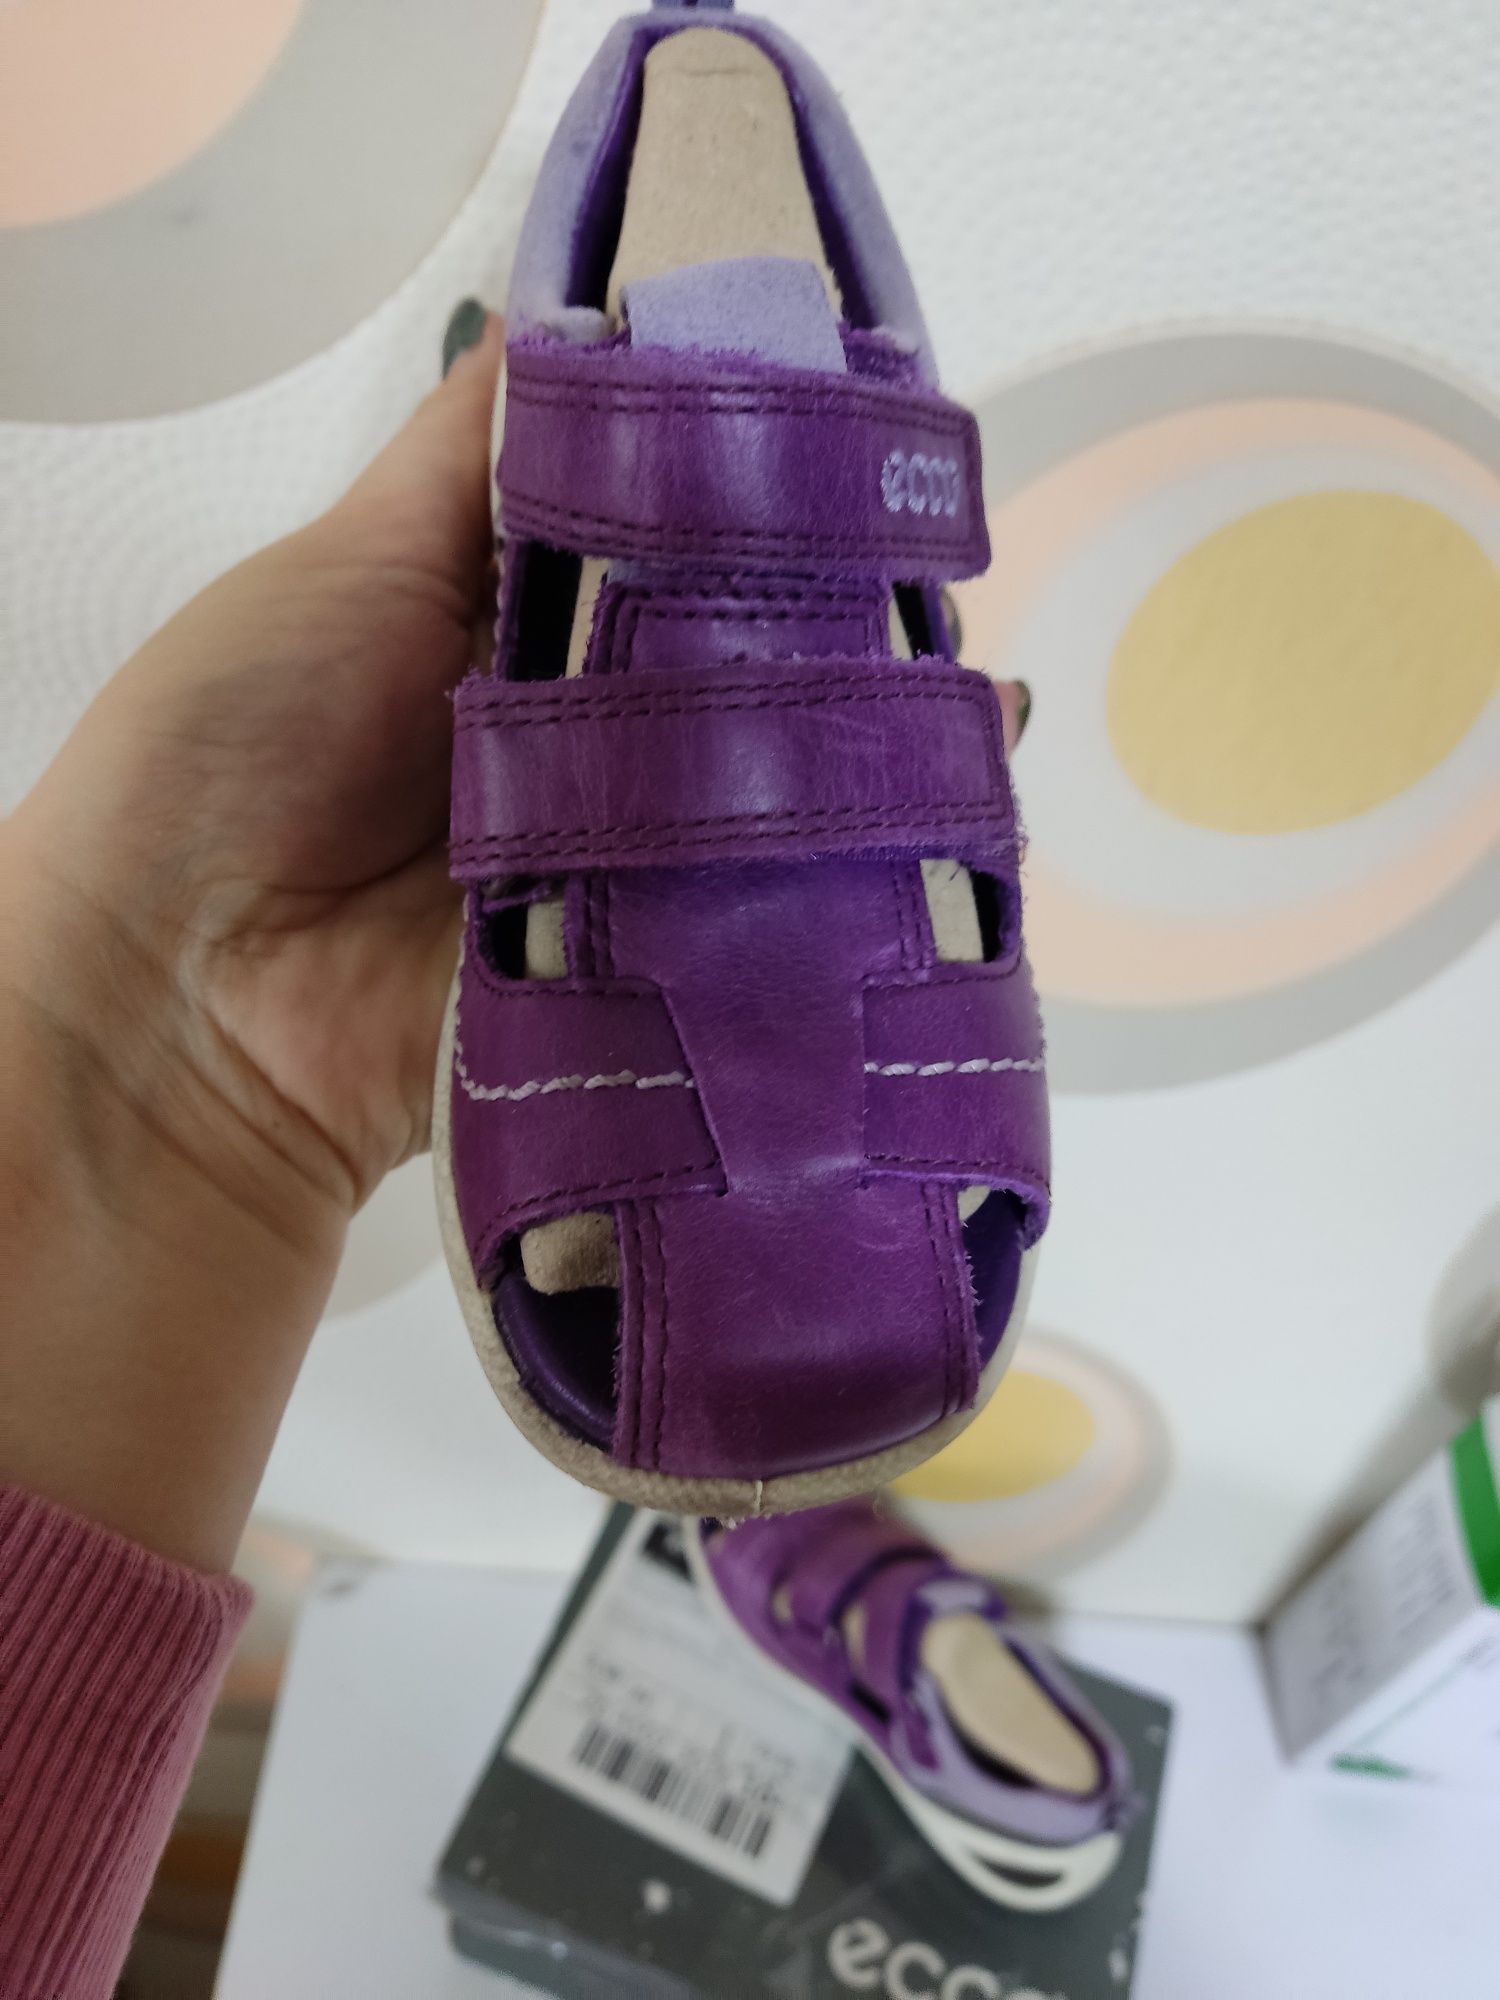 Скидка! Босоножки, сандали на липучках фиолетовые Ecco  26 размер